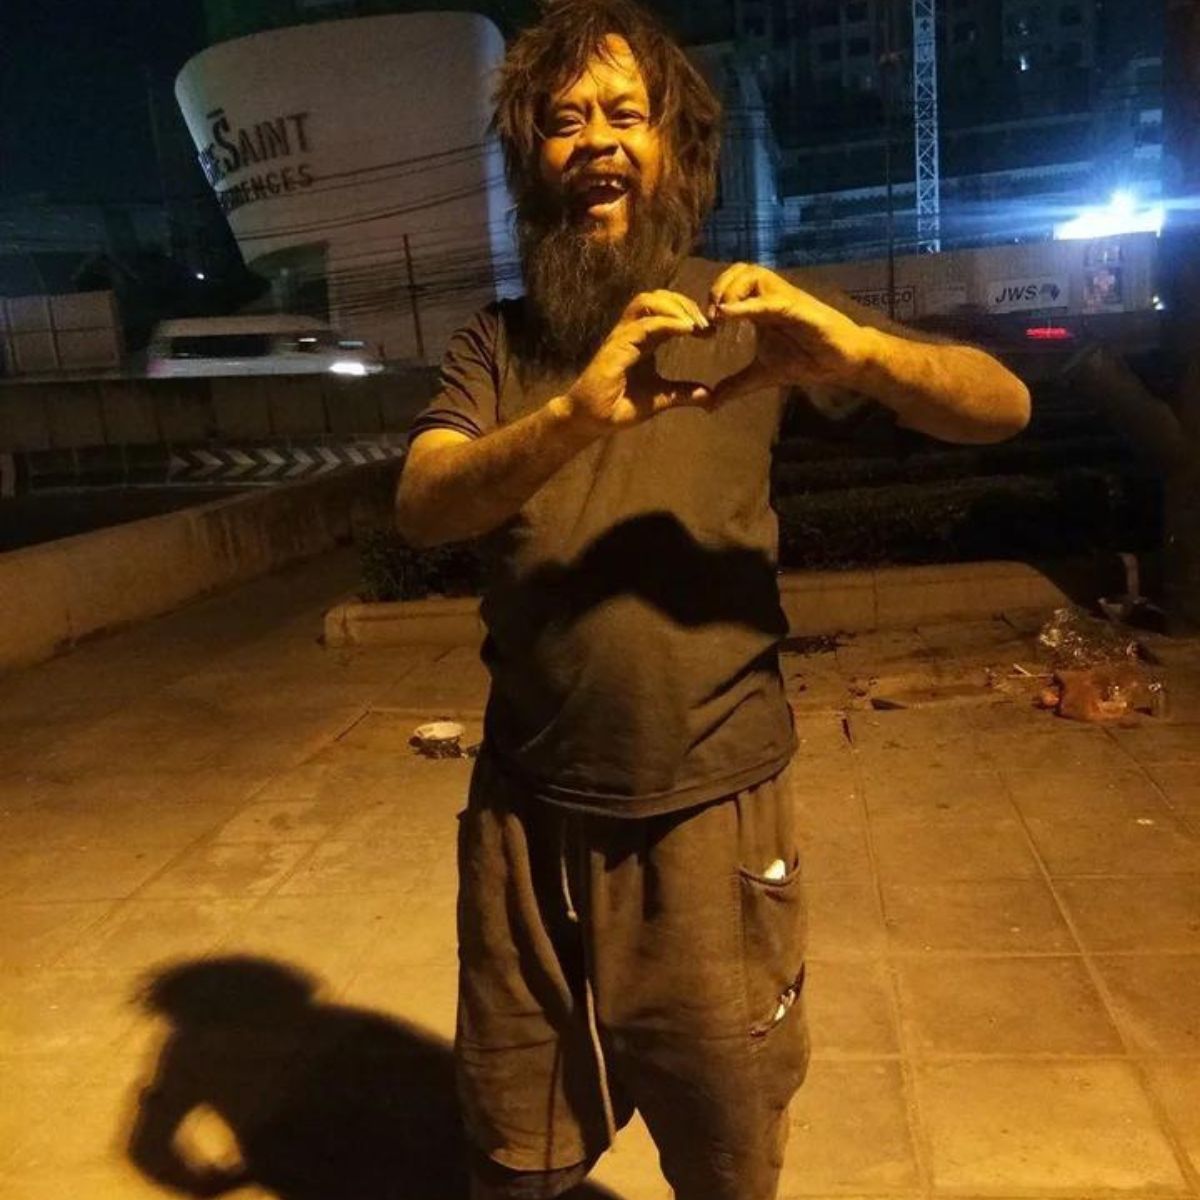 homeless man standing